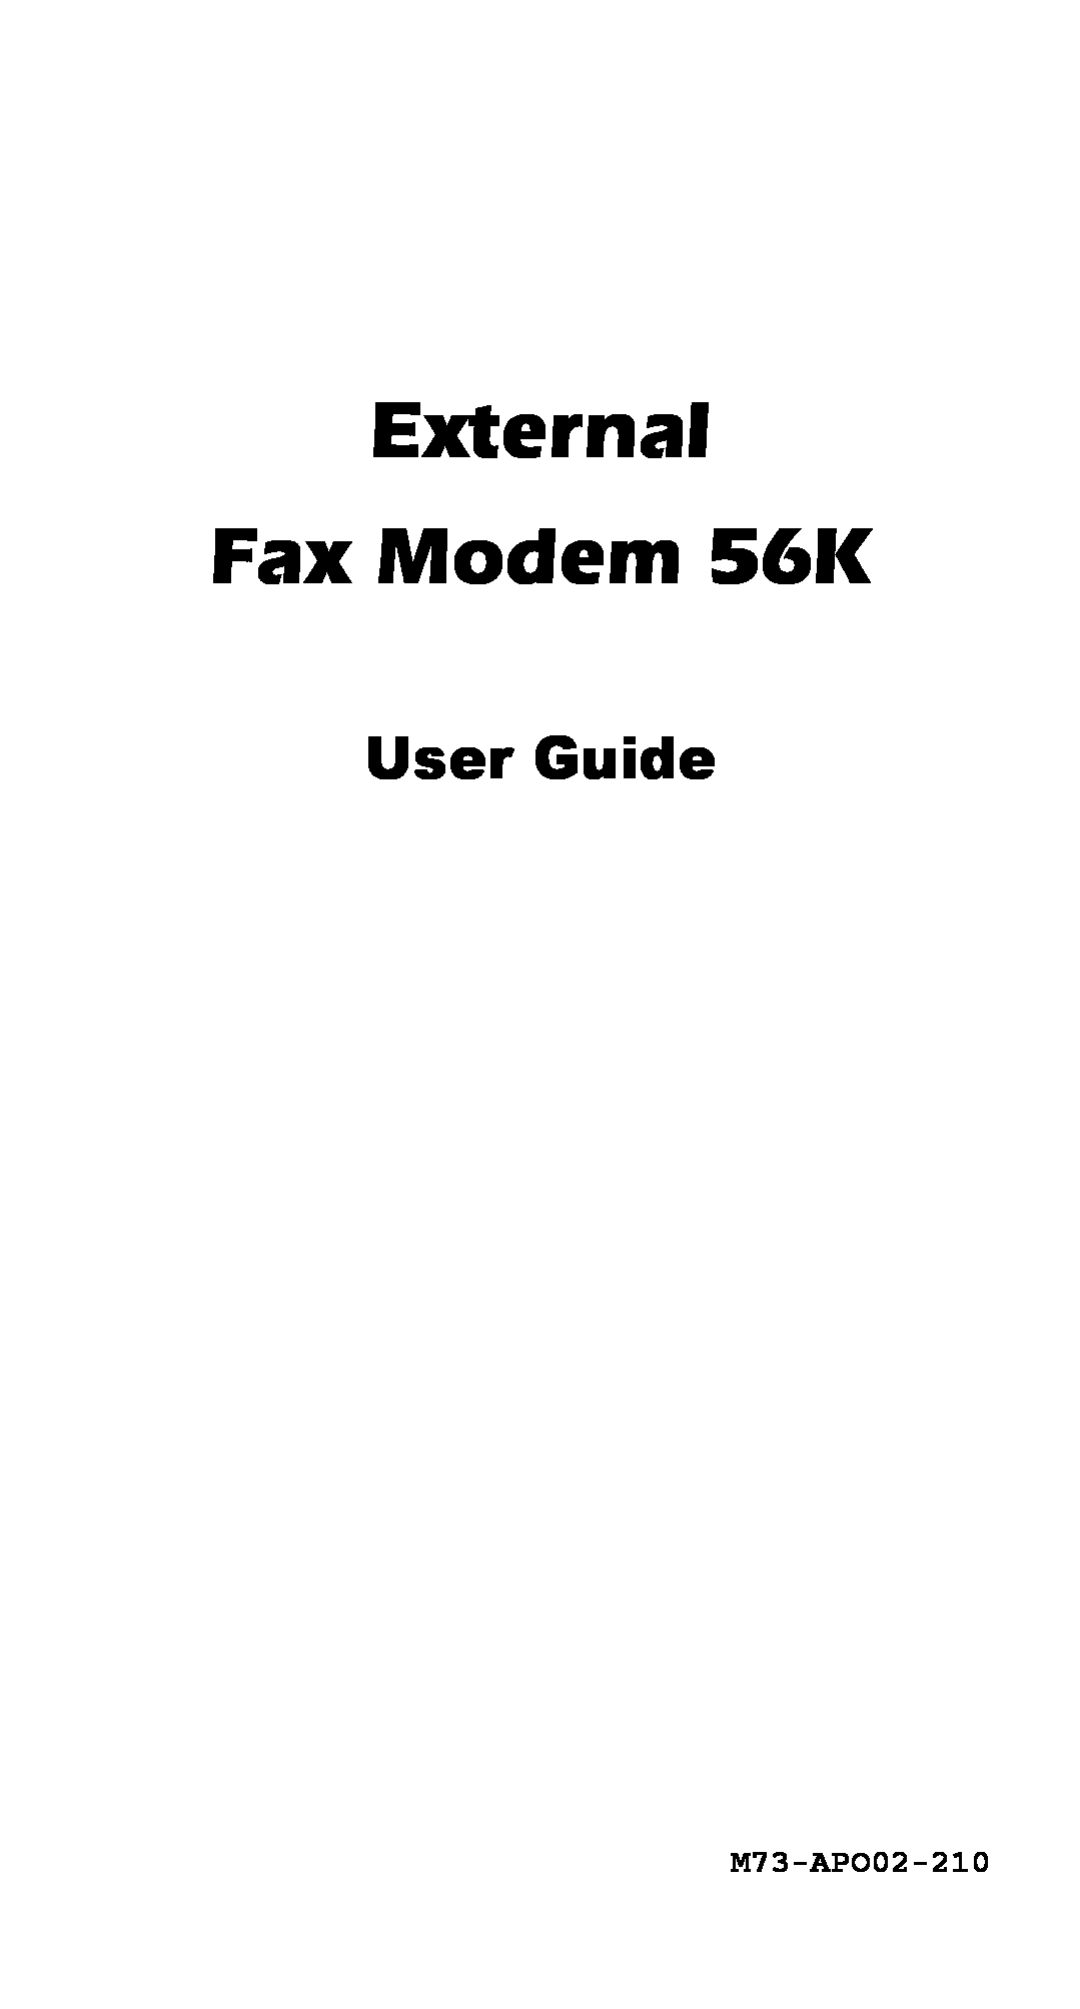 Abocom EFM560 manual External Fax Modem 56K, User Guide, M73-APO02-210 